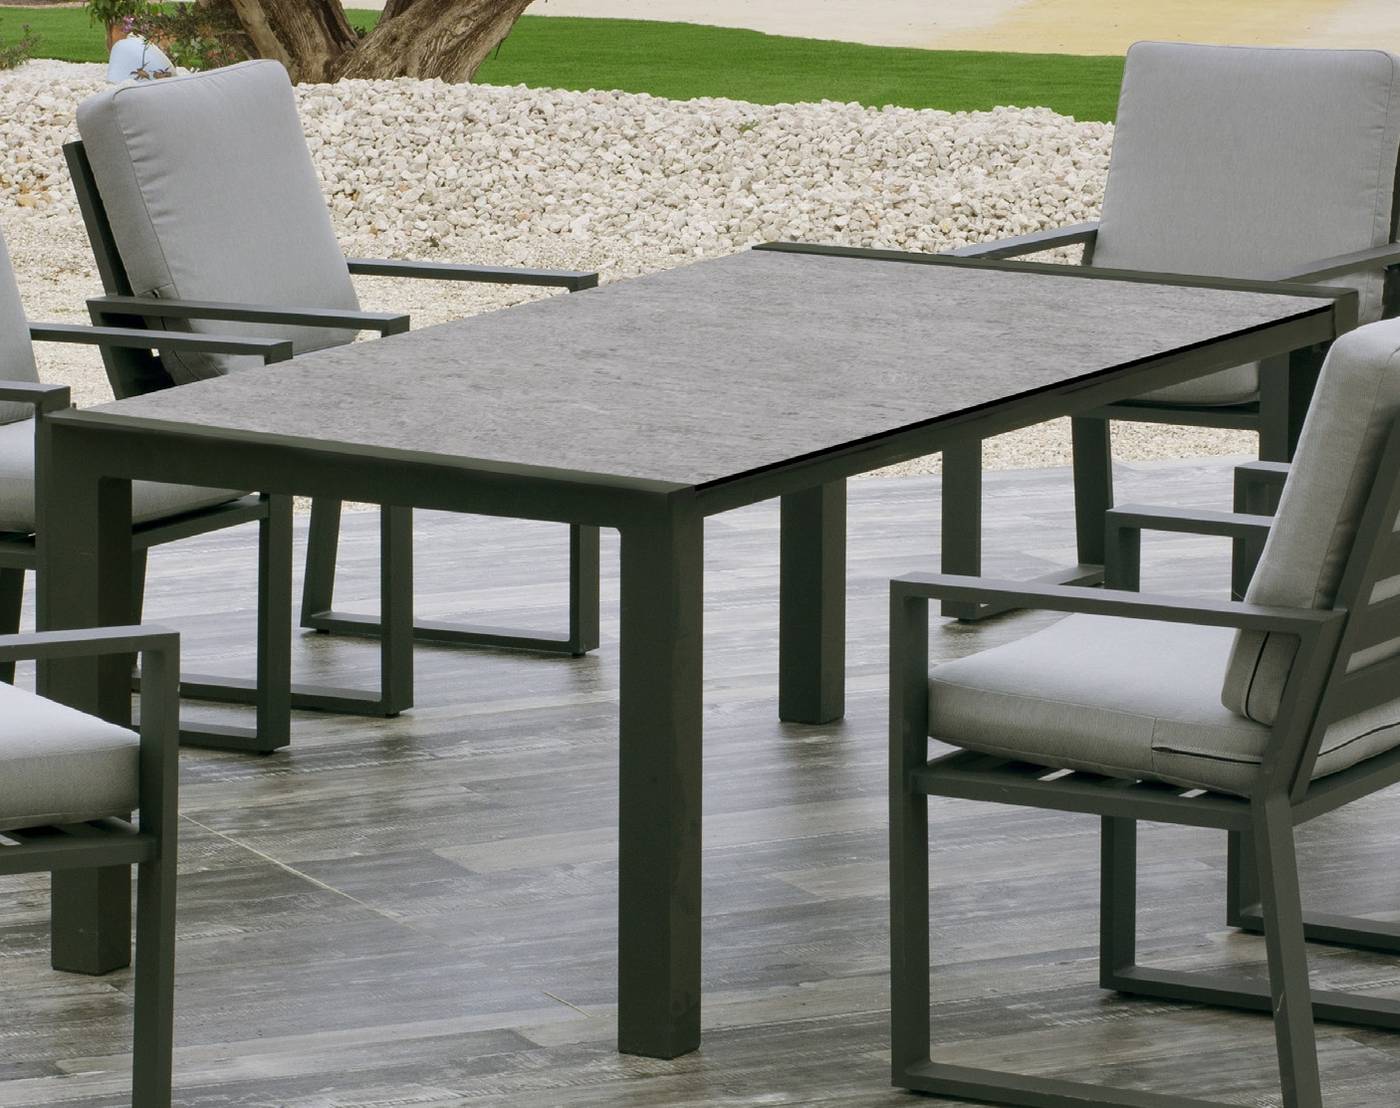 Mesa de aluminio rectangular de 175 cm. Tablero de piedra sinterizada de alta calidad. Disponible en varios colores.